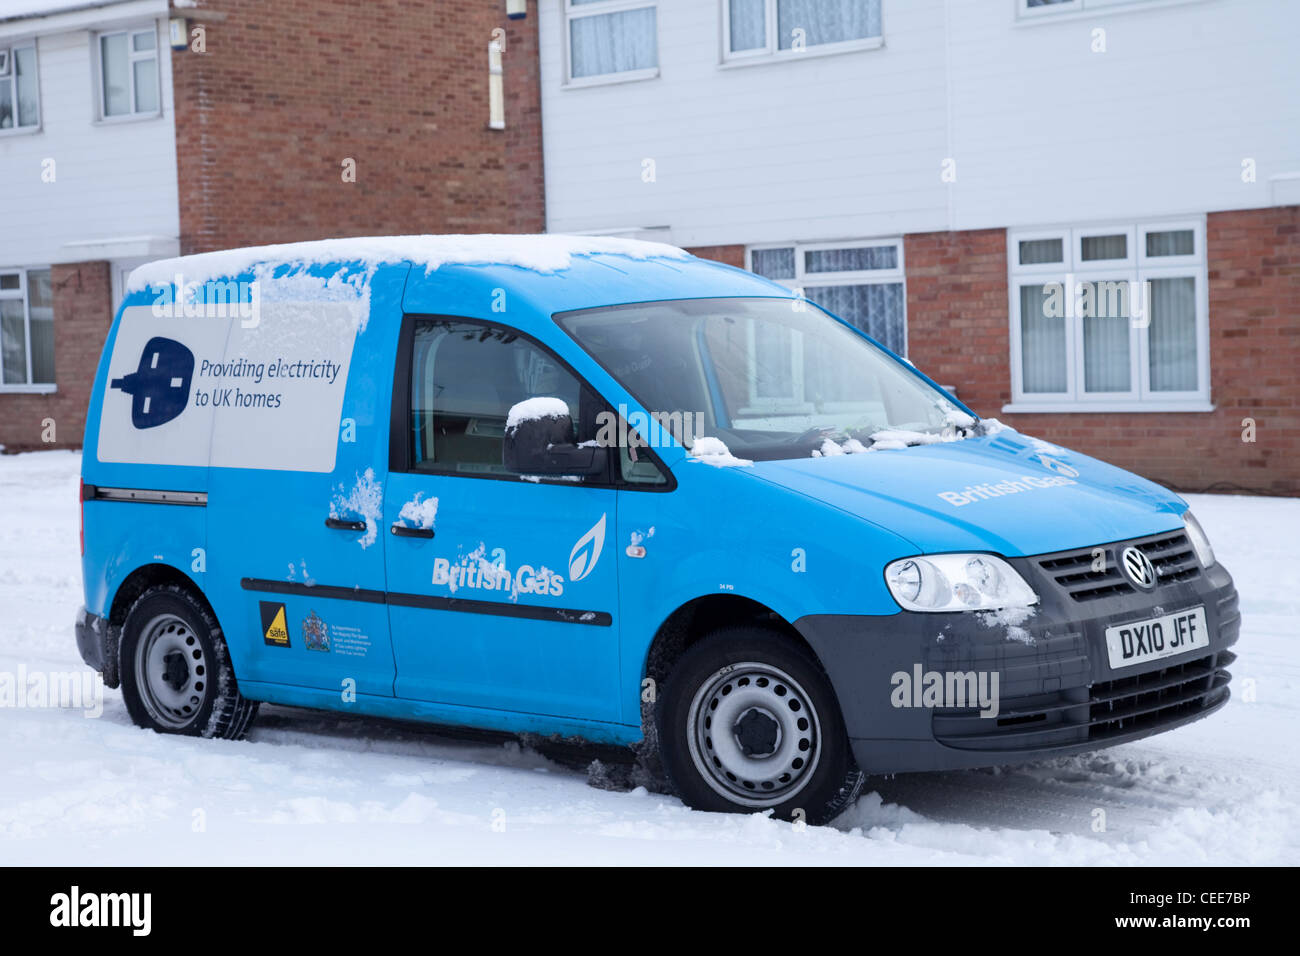 Ein britische Gas Centrica Energie Lieferant Ingenieure van parkten außerhalb eines Wohnhauses im Schnee Nottingham England UK Stockfoto